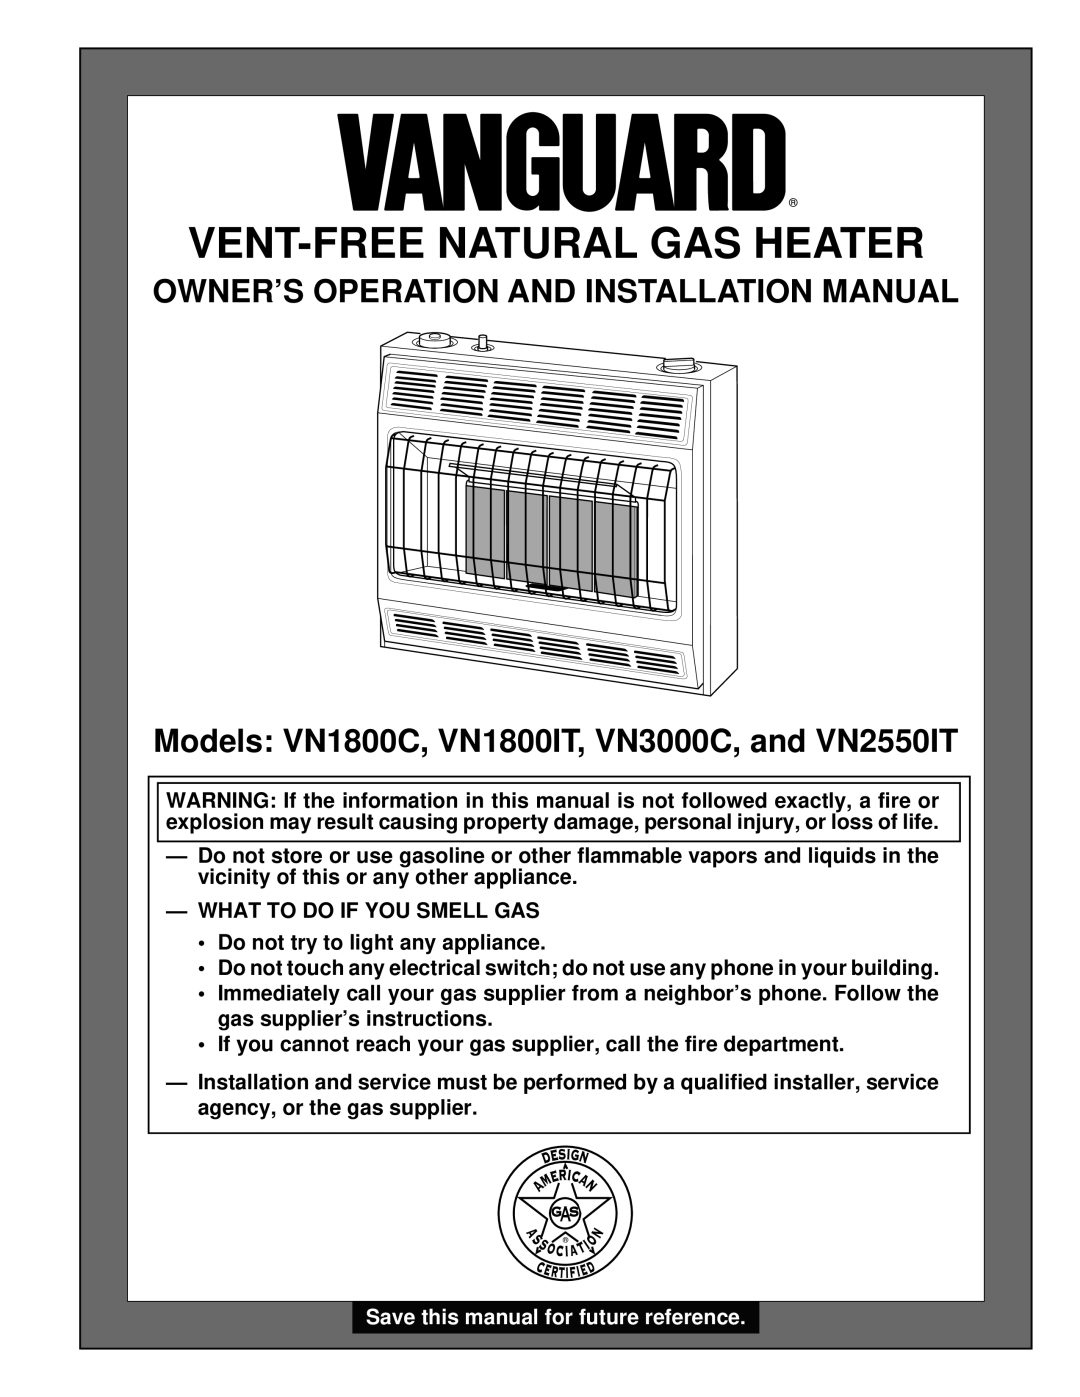 Desa VN1800C, VN1800IT, VN2550IT installation manual Owner’S Operation And Installation Manual, Vent-Freenatural Gas Heater 